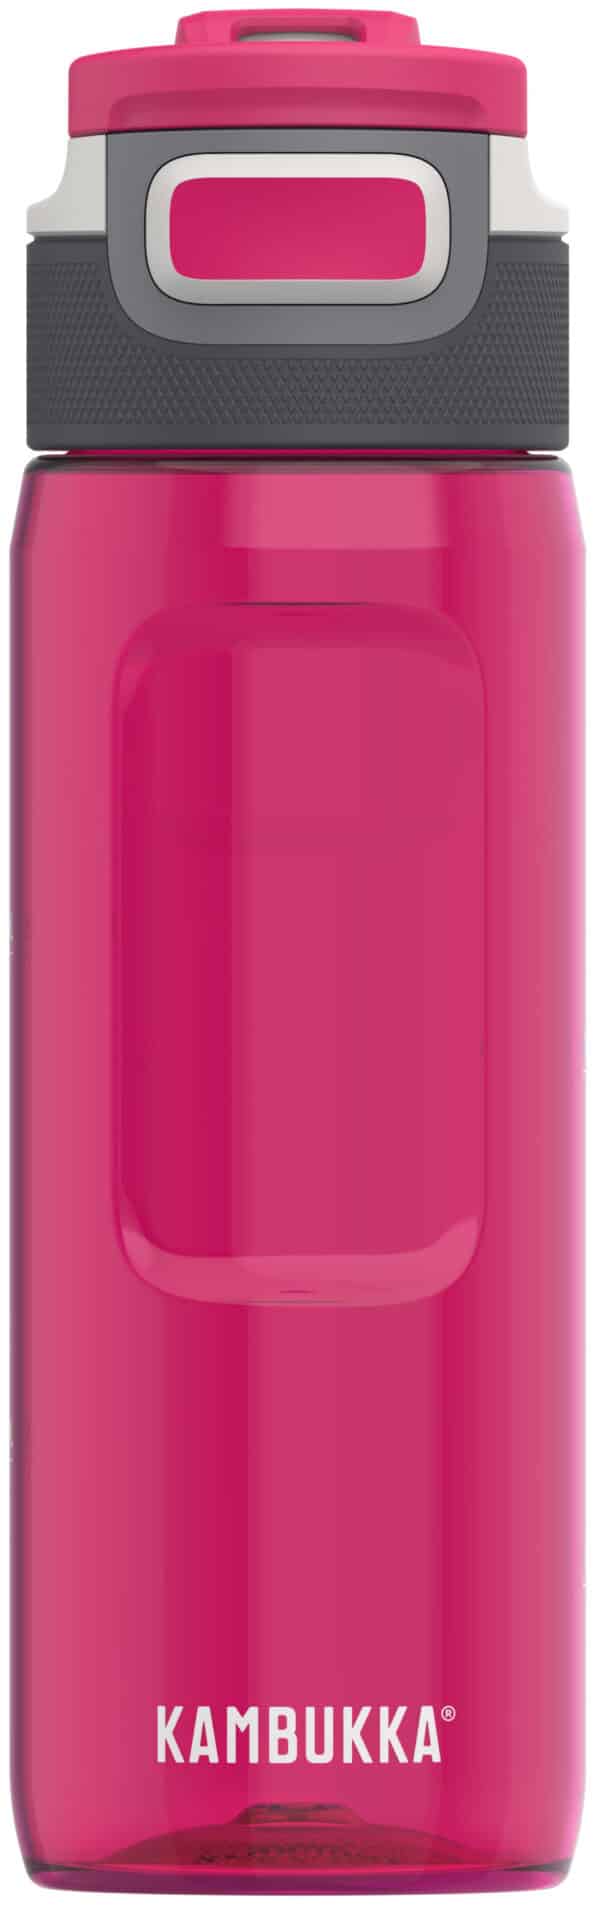 בקבוק שתיה סגול 750 מ"ל Kambukka Elton Lipstick קמבוקה￼